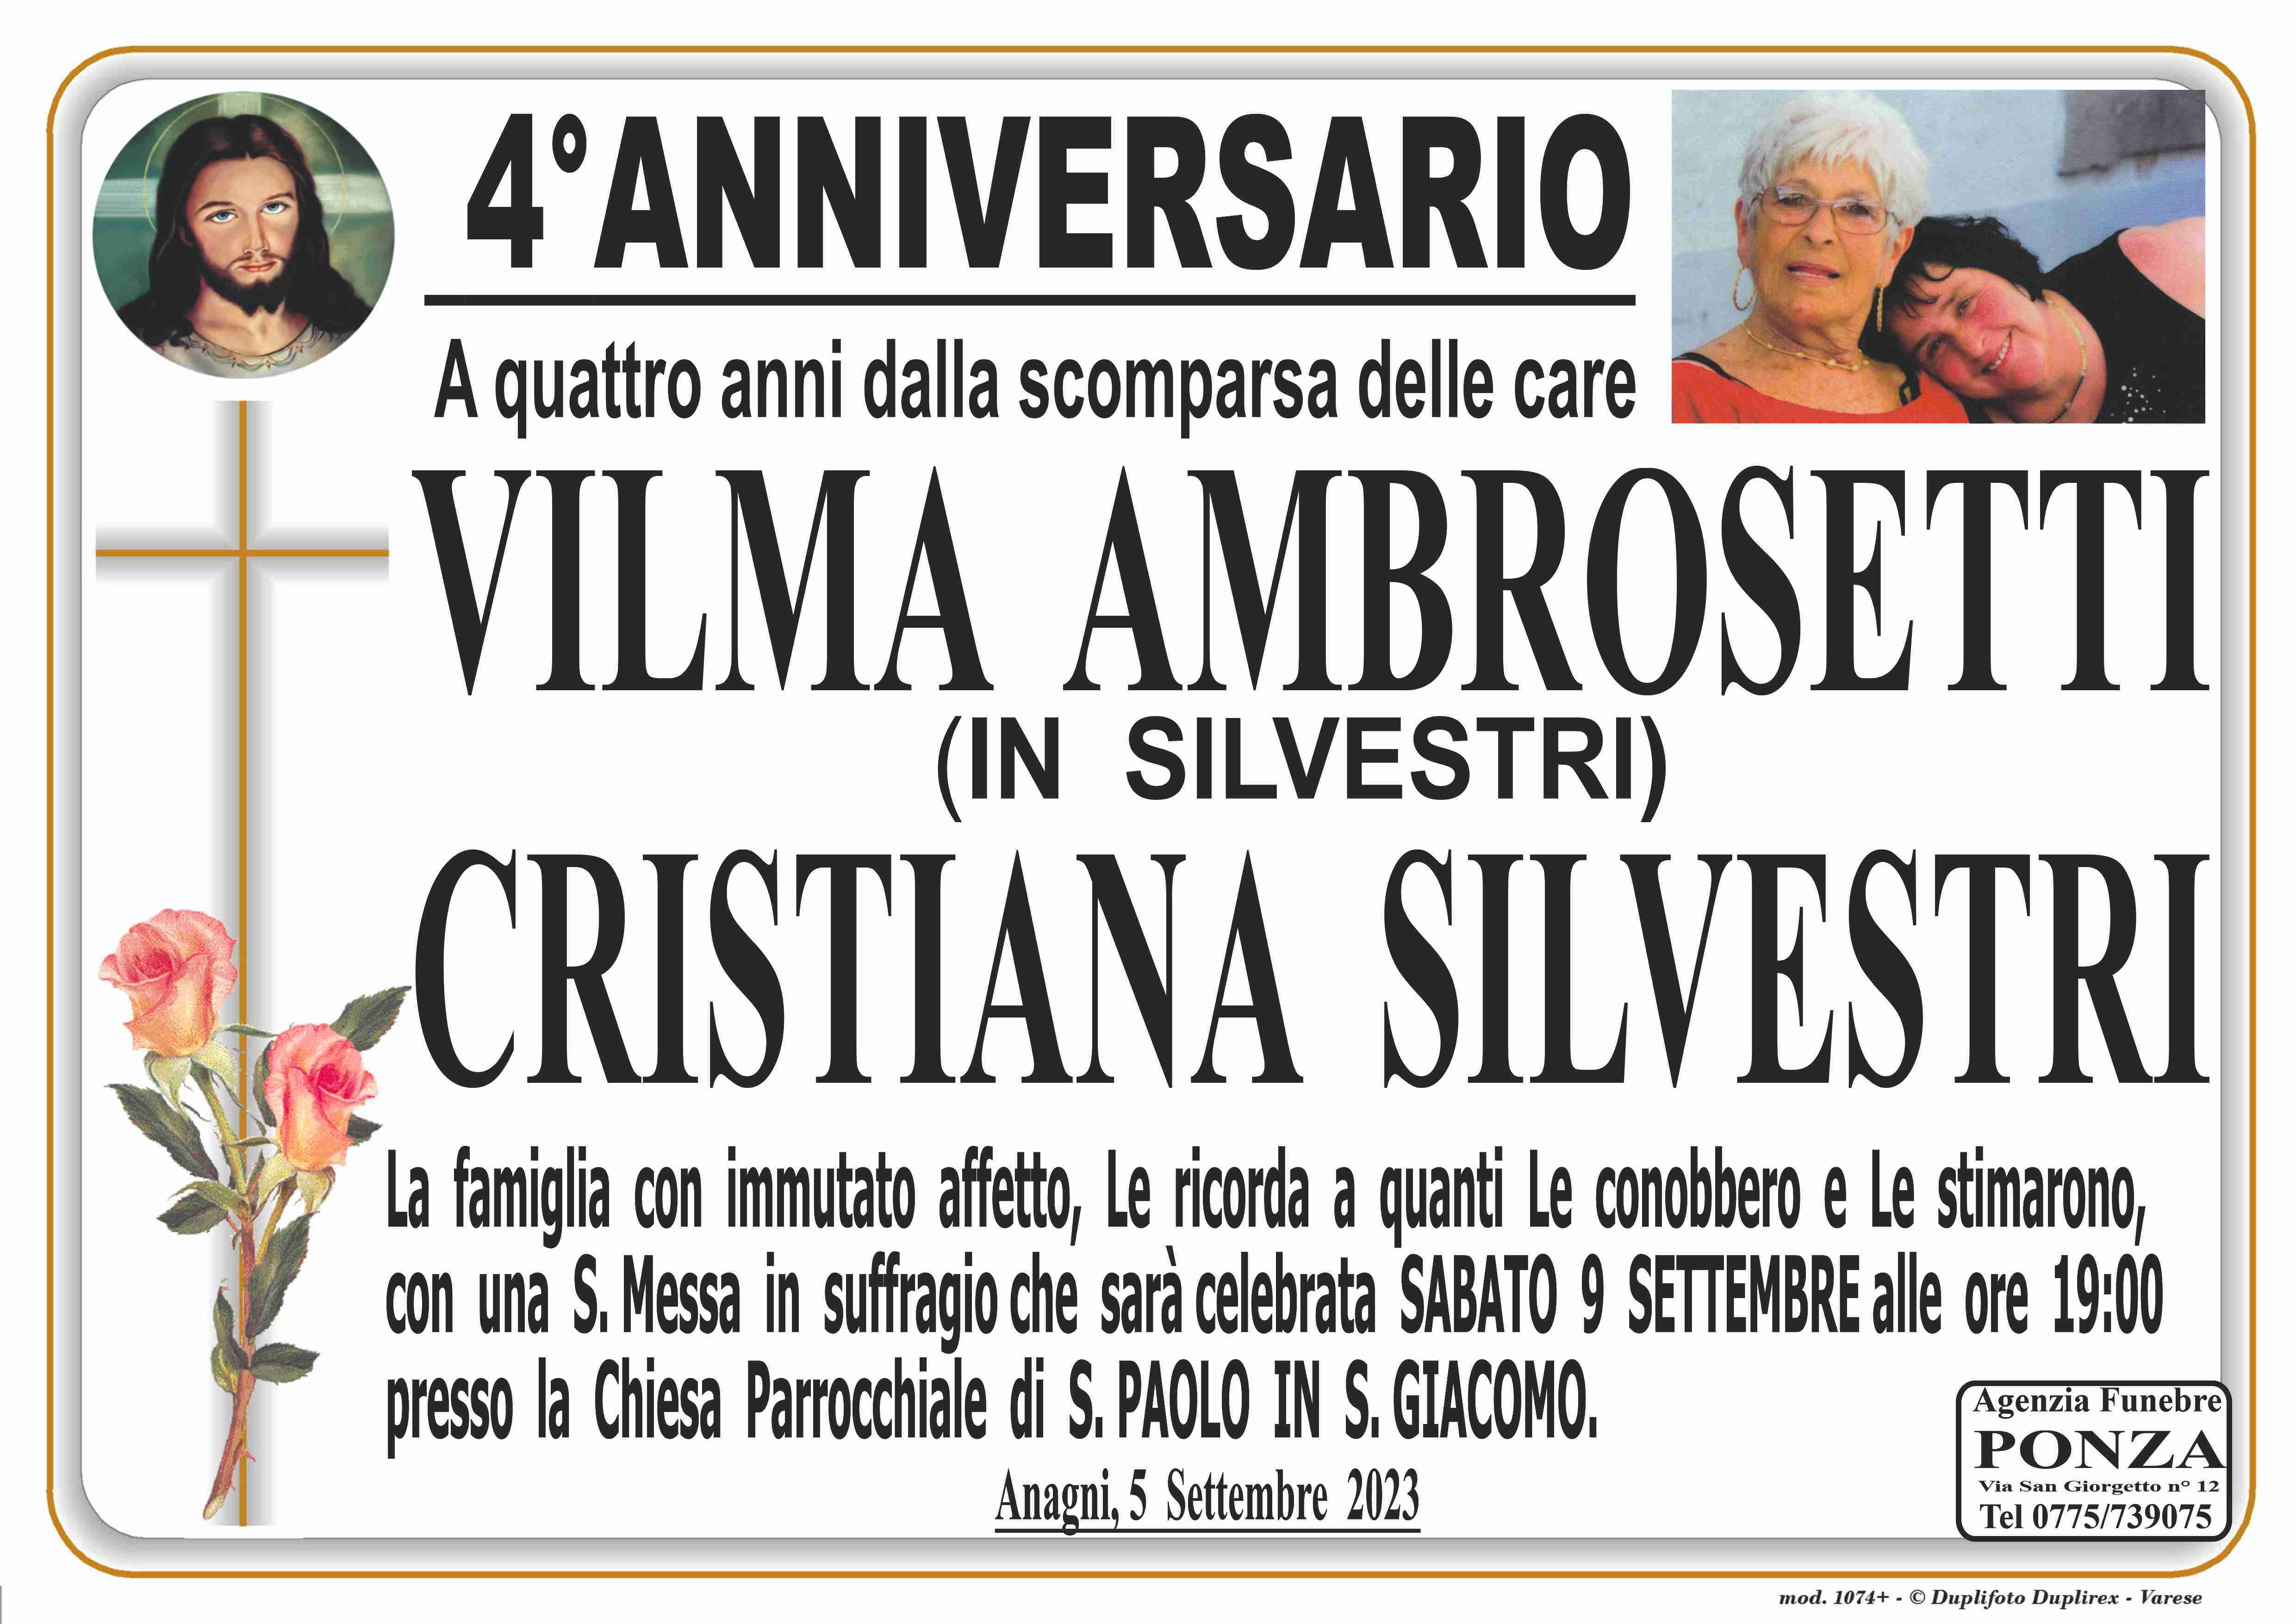 Cristiana Silvestri